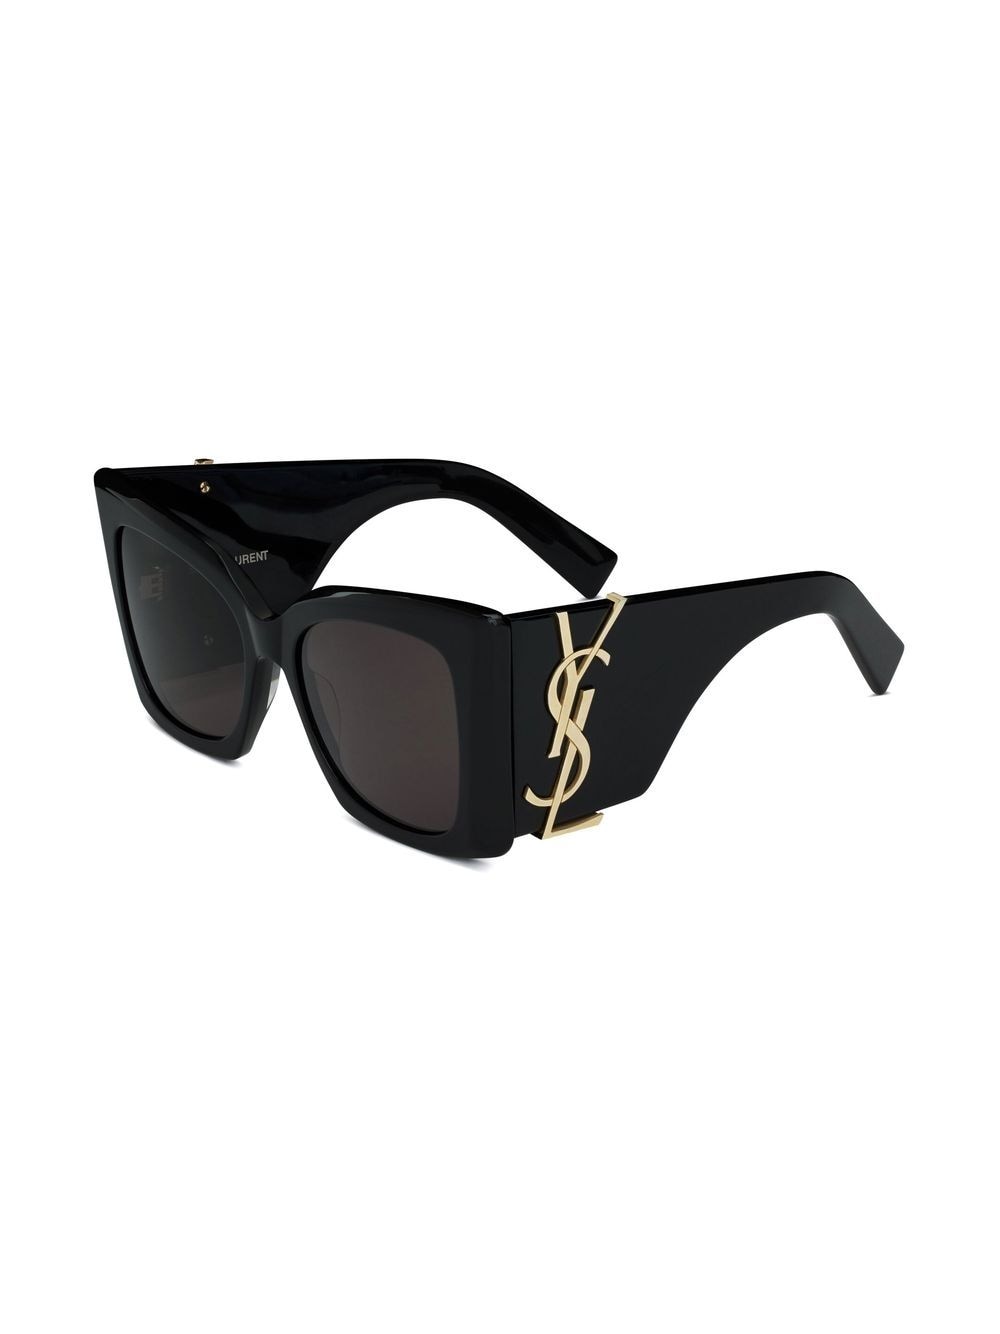 SAINT LAURENT Black Oversized Sunglasses with Cassandre Temple Accent